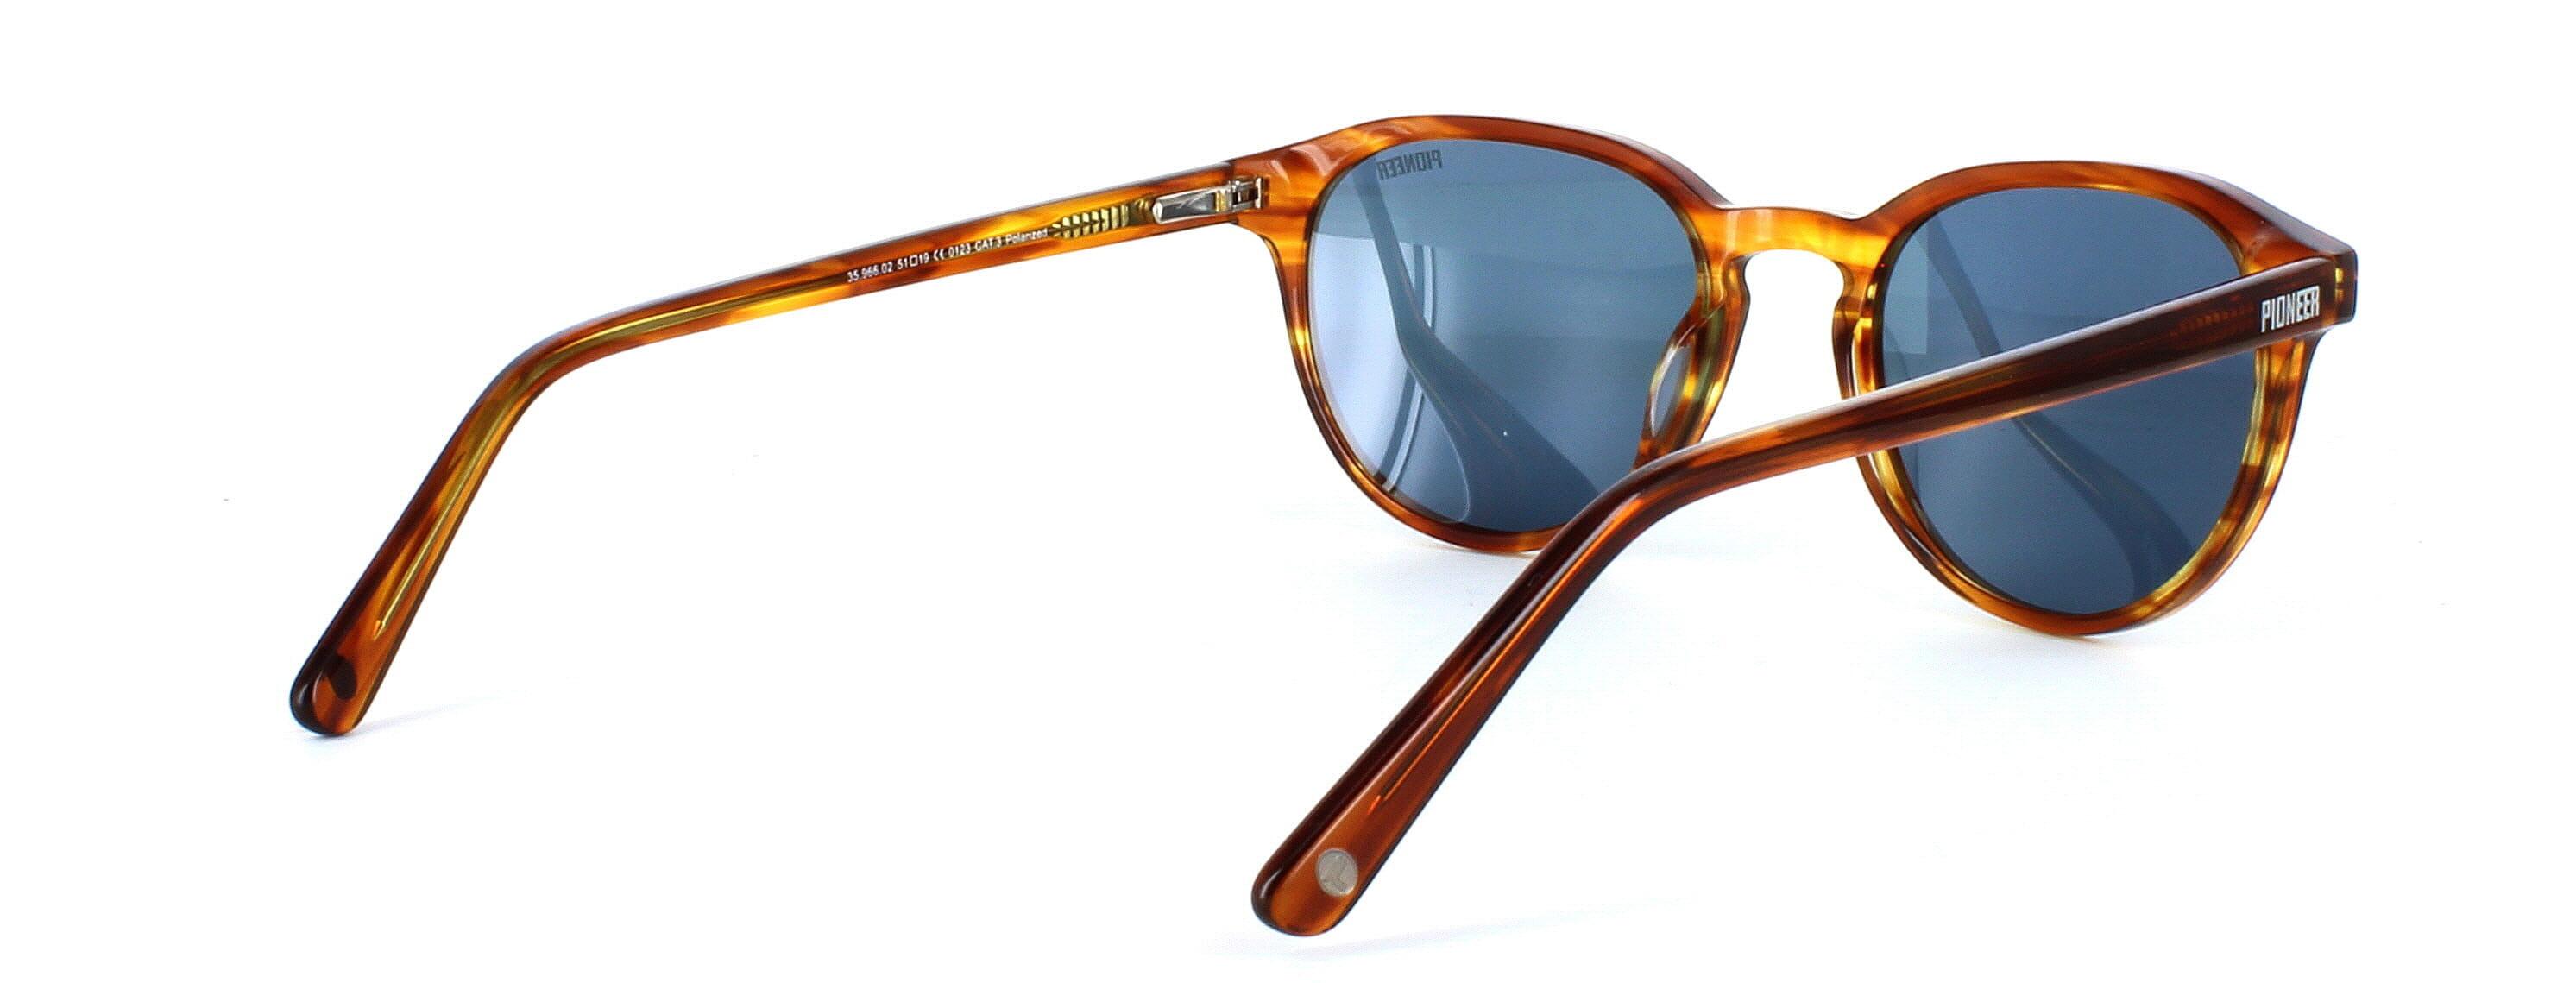 Memphis - Ladies round shaped acetate sunglasses in tortoise - image view 4